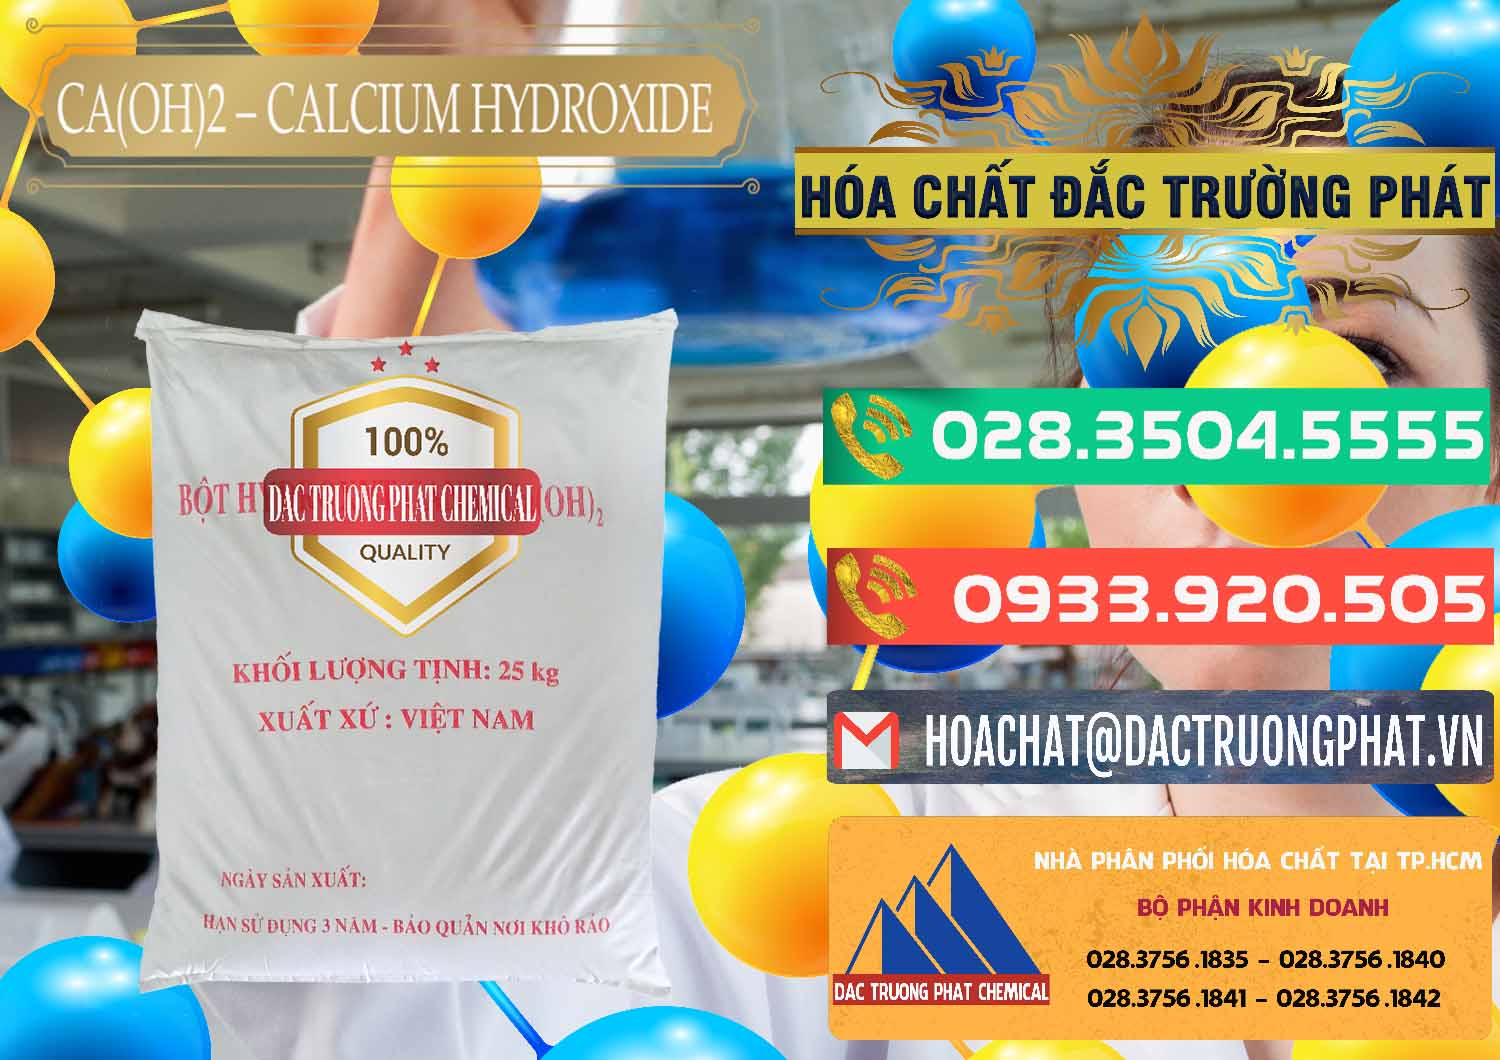 Công ty chuyên bán _ phân phối Ca(OH)2 - Calcium Hydroxide Việt Nam - 0186 - Cty cung cấp _ phân phối hóa chất tại TP.HCM - congtyhoachat.com.vn